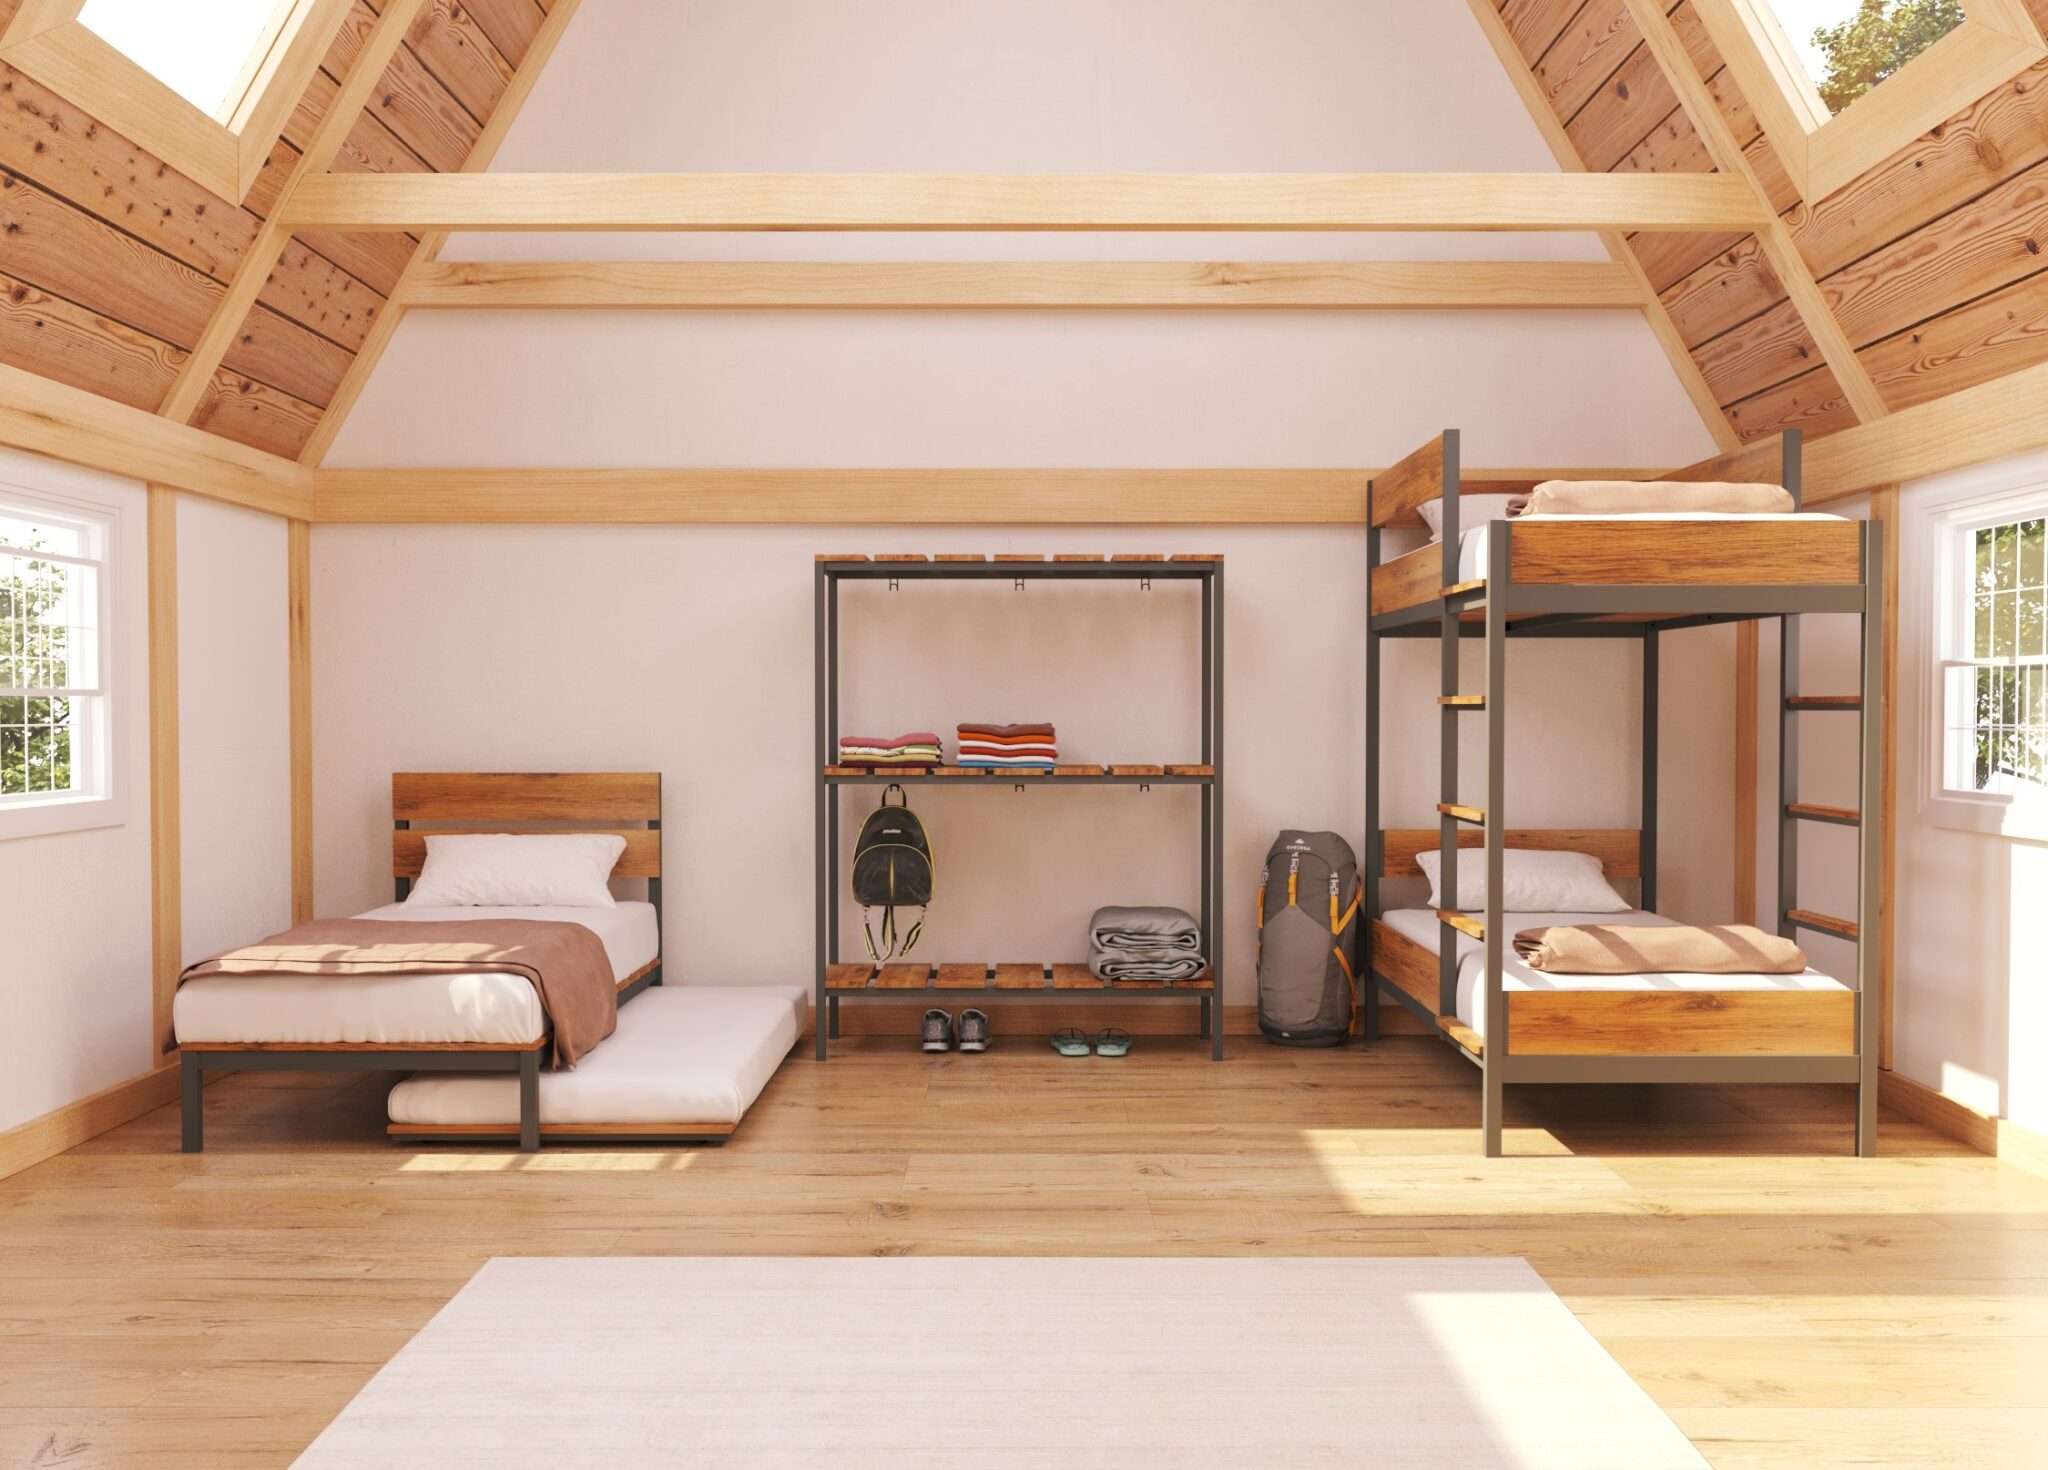 Dormitório de pousada estilo rústico com cama, bicama, beliche e estante de aço com madeira da linha montes com teto angulado e vigas de madeira